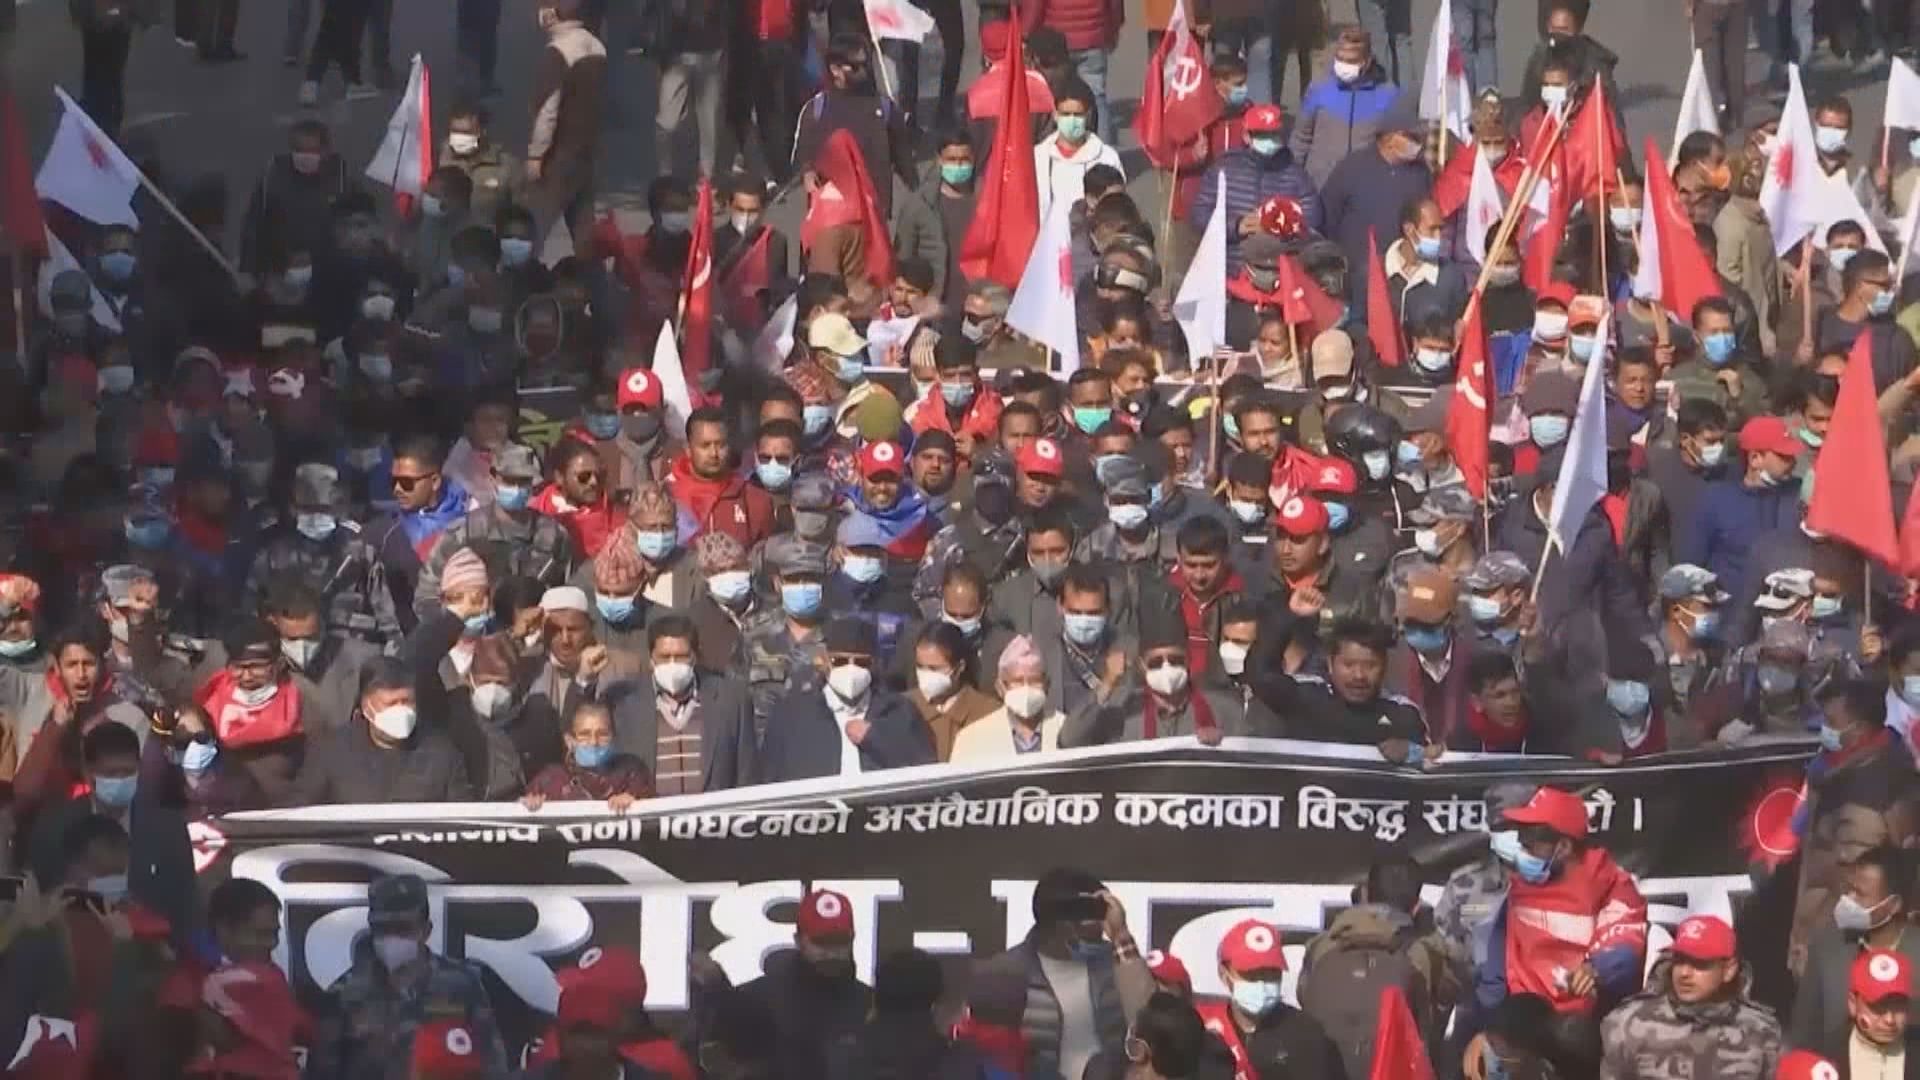 尼泊爾民眾示威要求總理下台